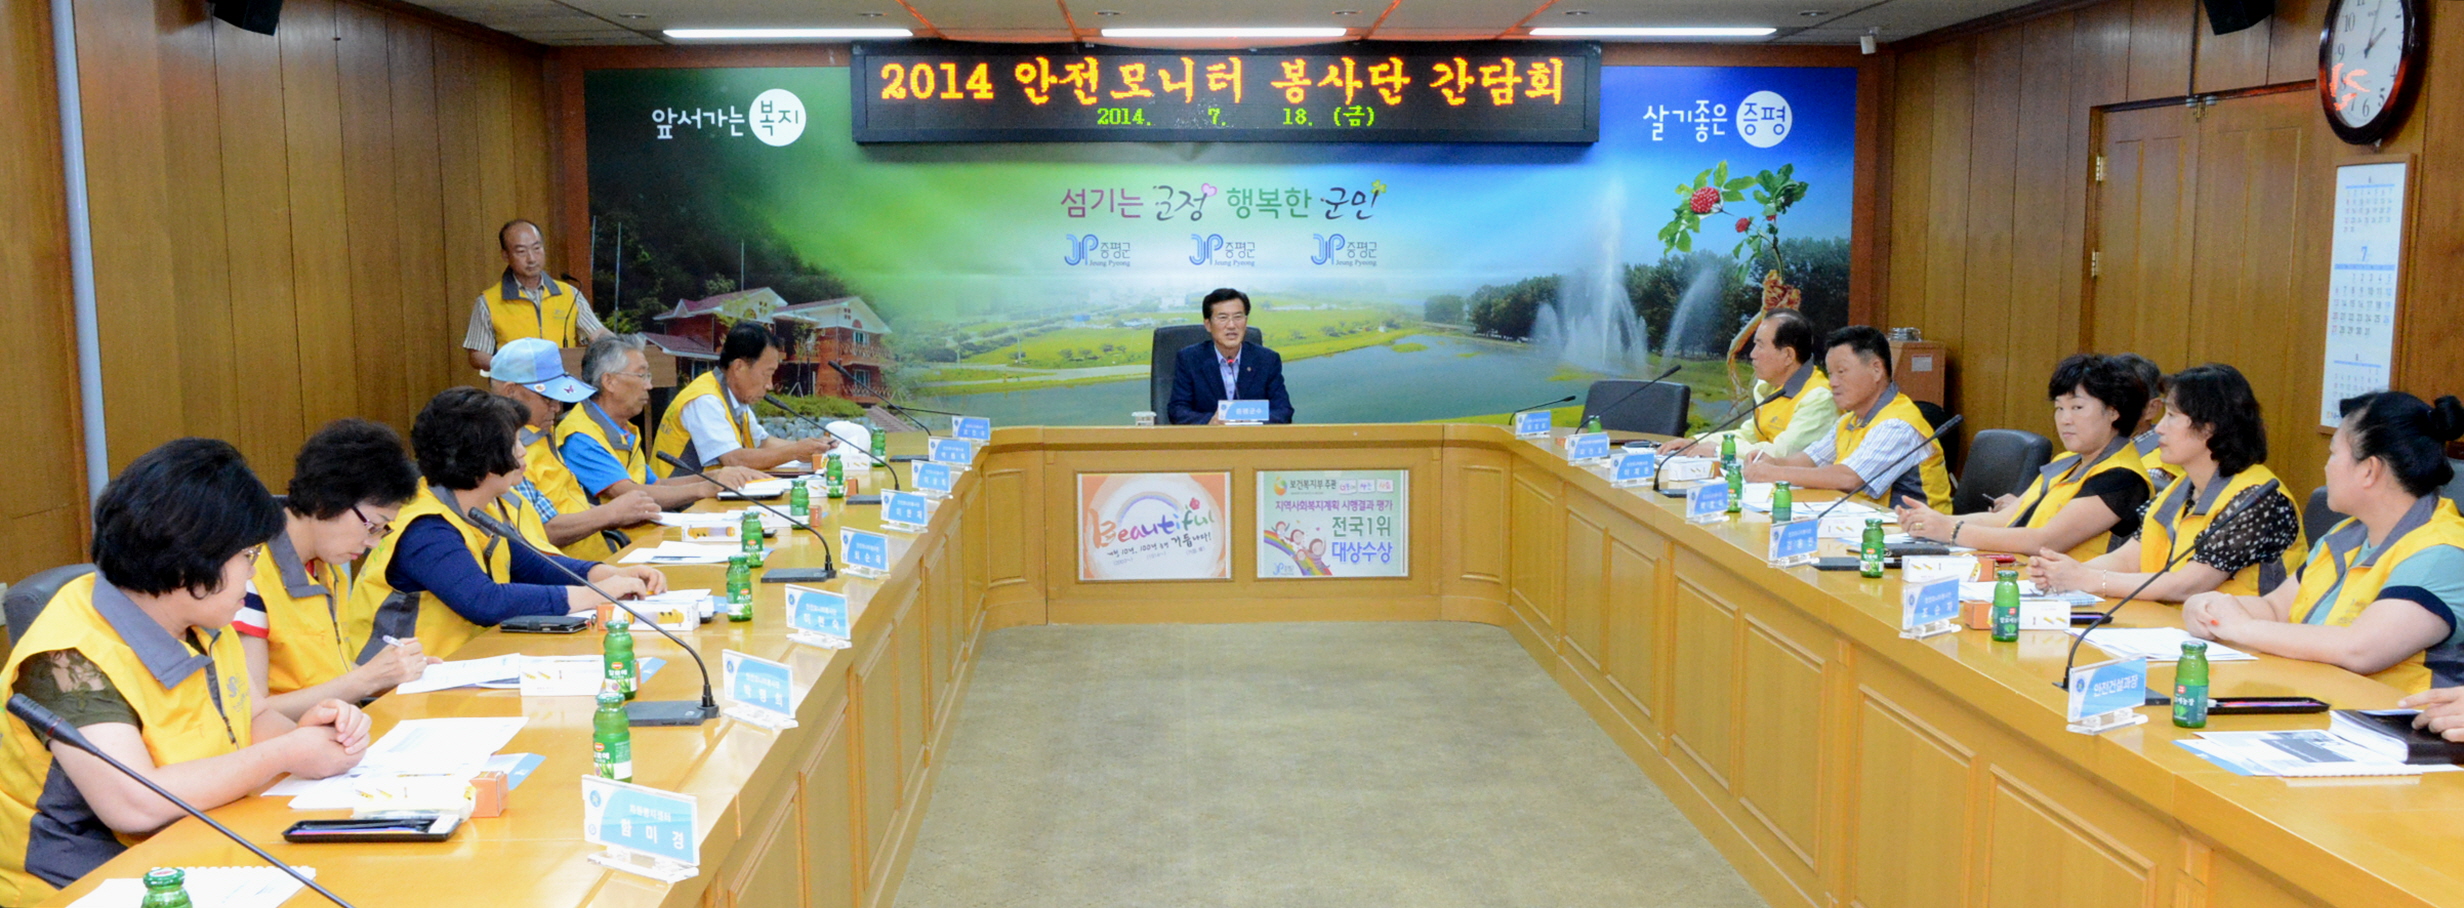 2014년 안전모니터봉사단 간담회 참석